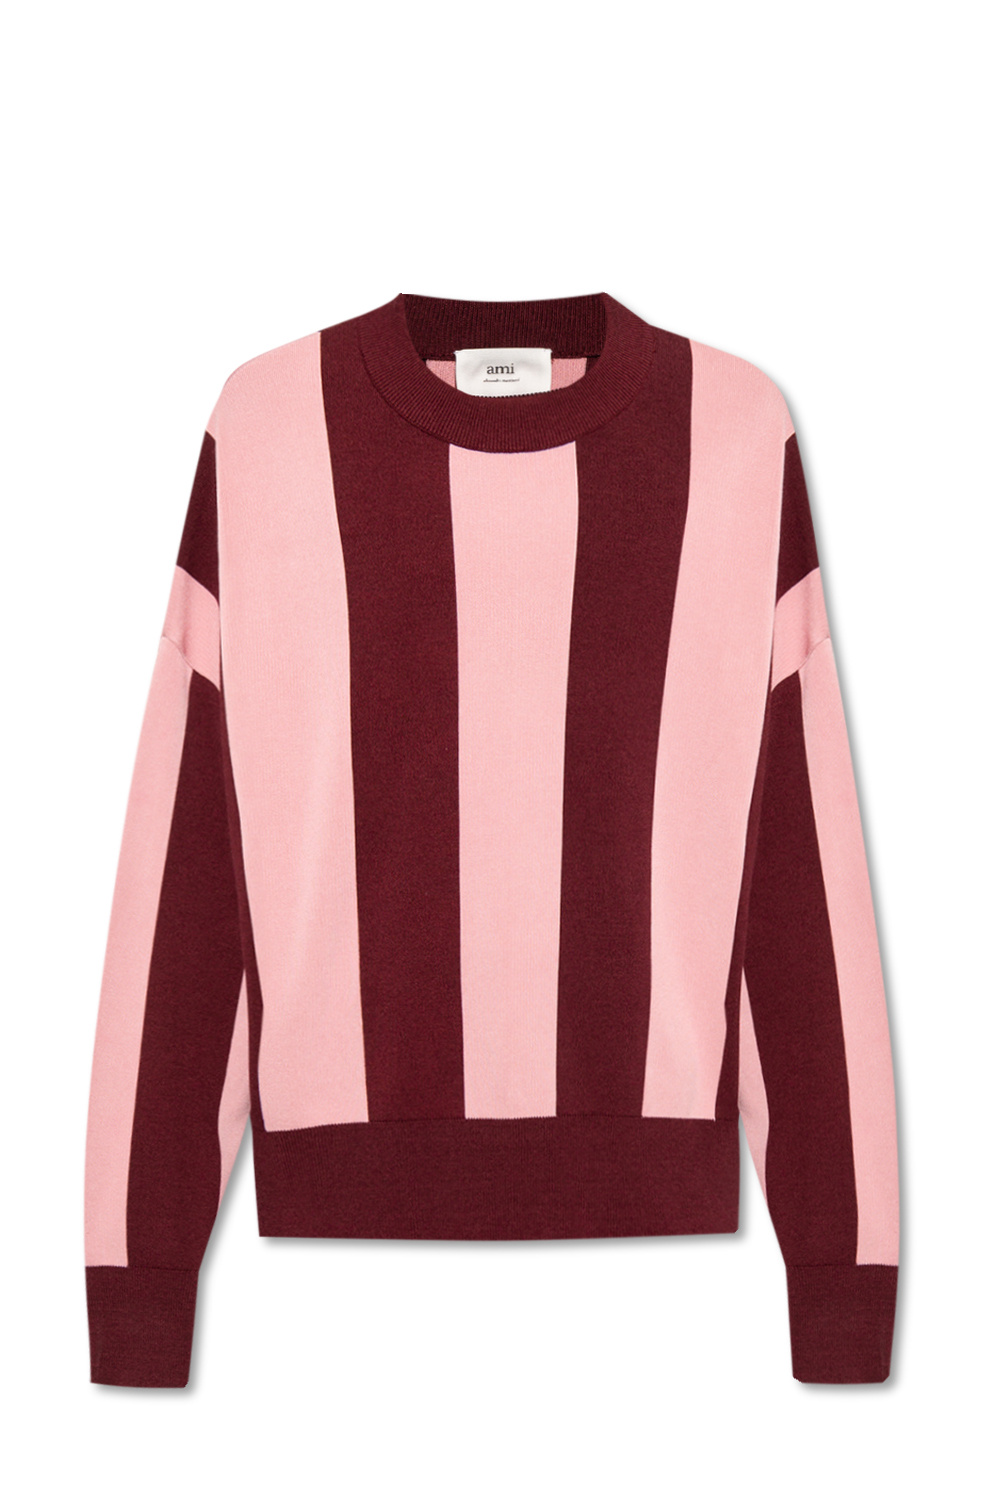 Ami Alexandre Mattiussi Striped sweater